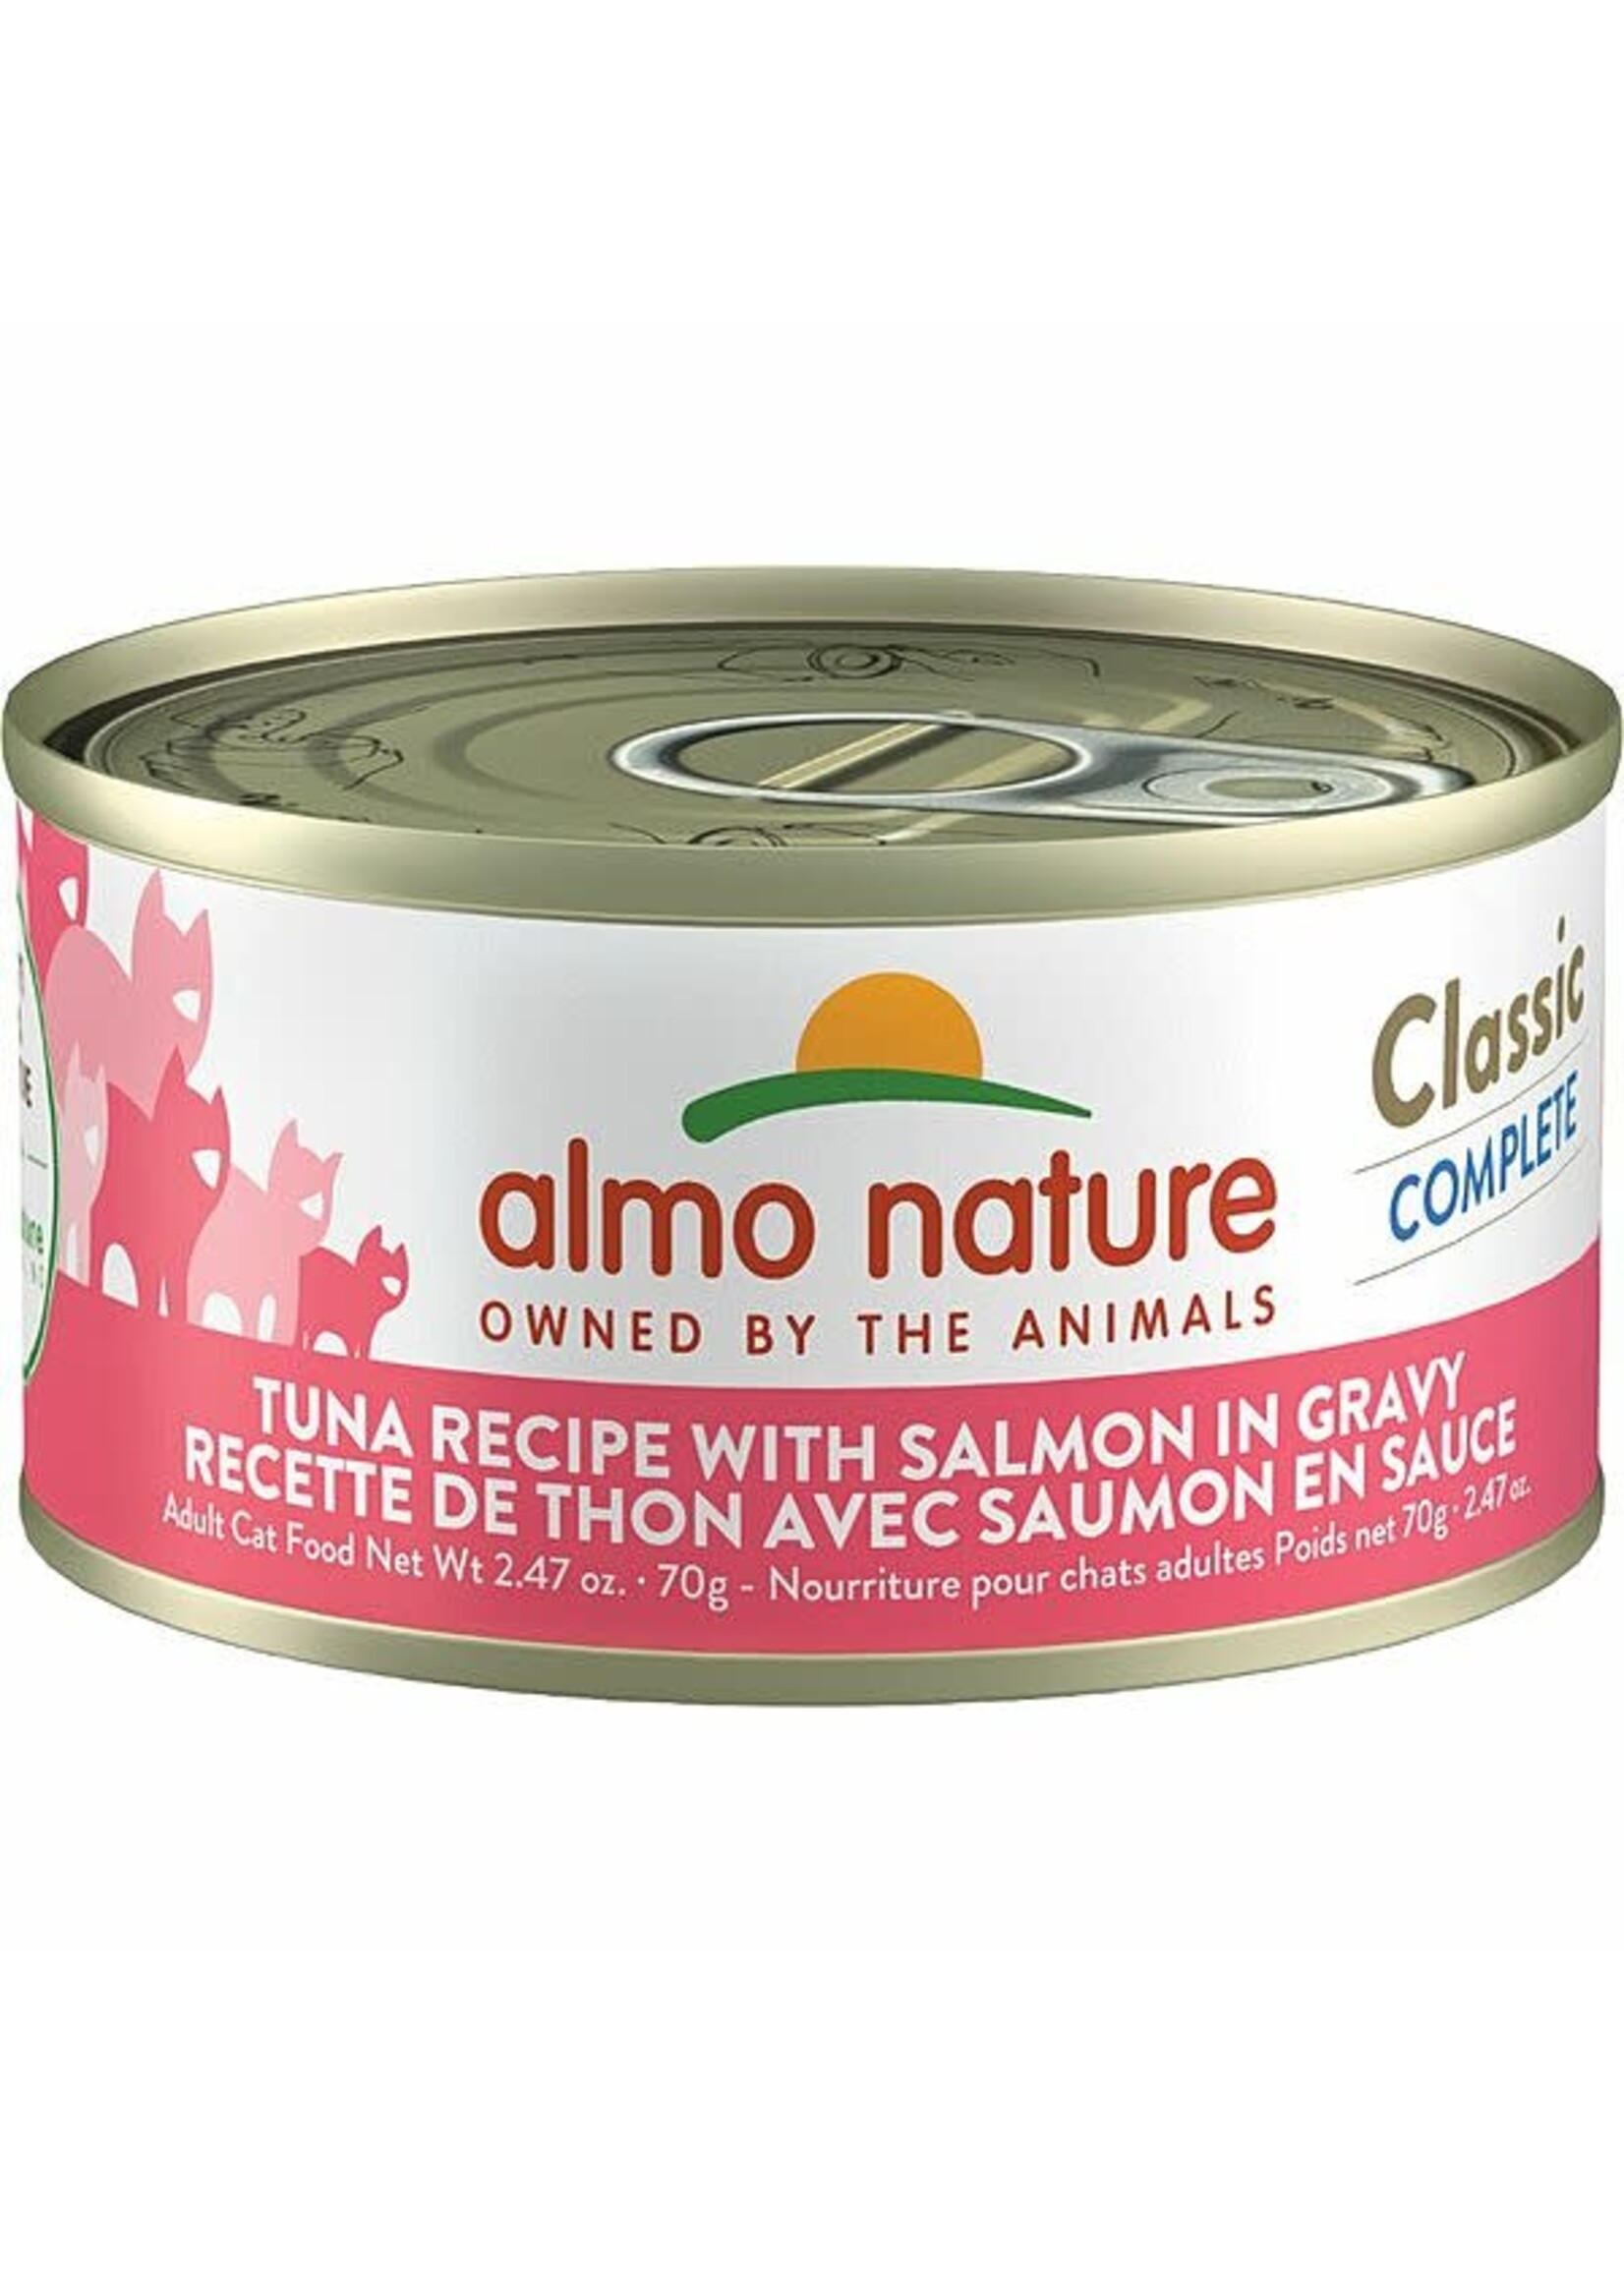 almo Nature almo nature Classic Complete Tuna Recipe w/ Salmon in Gravy 70gm single